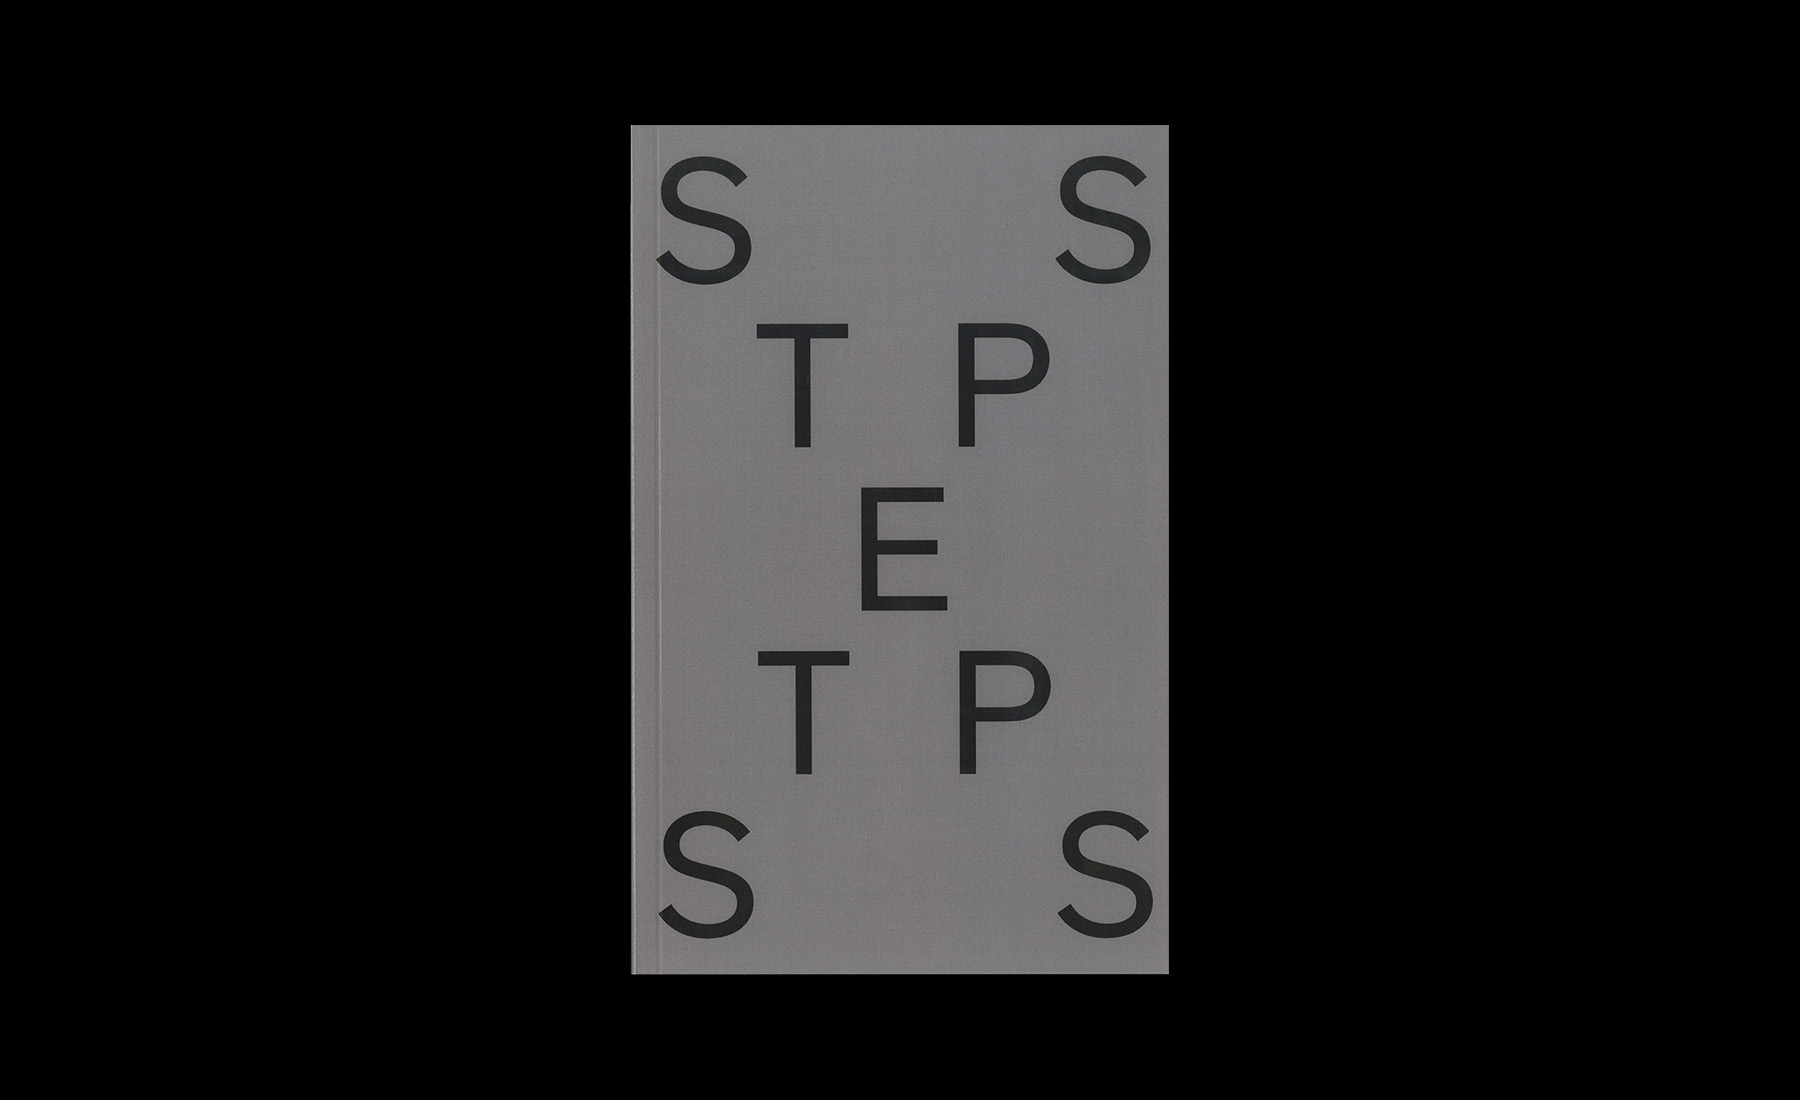 Steps — Brooks Heintzelman, 2017